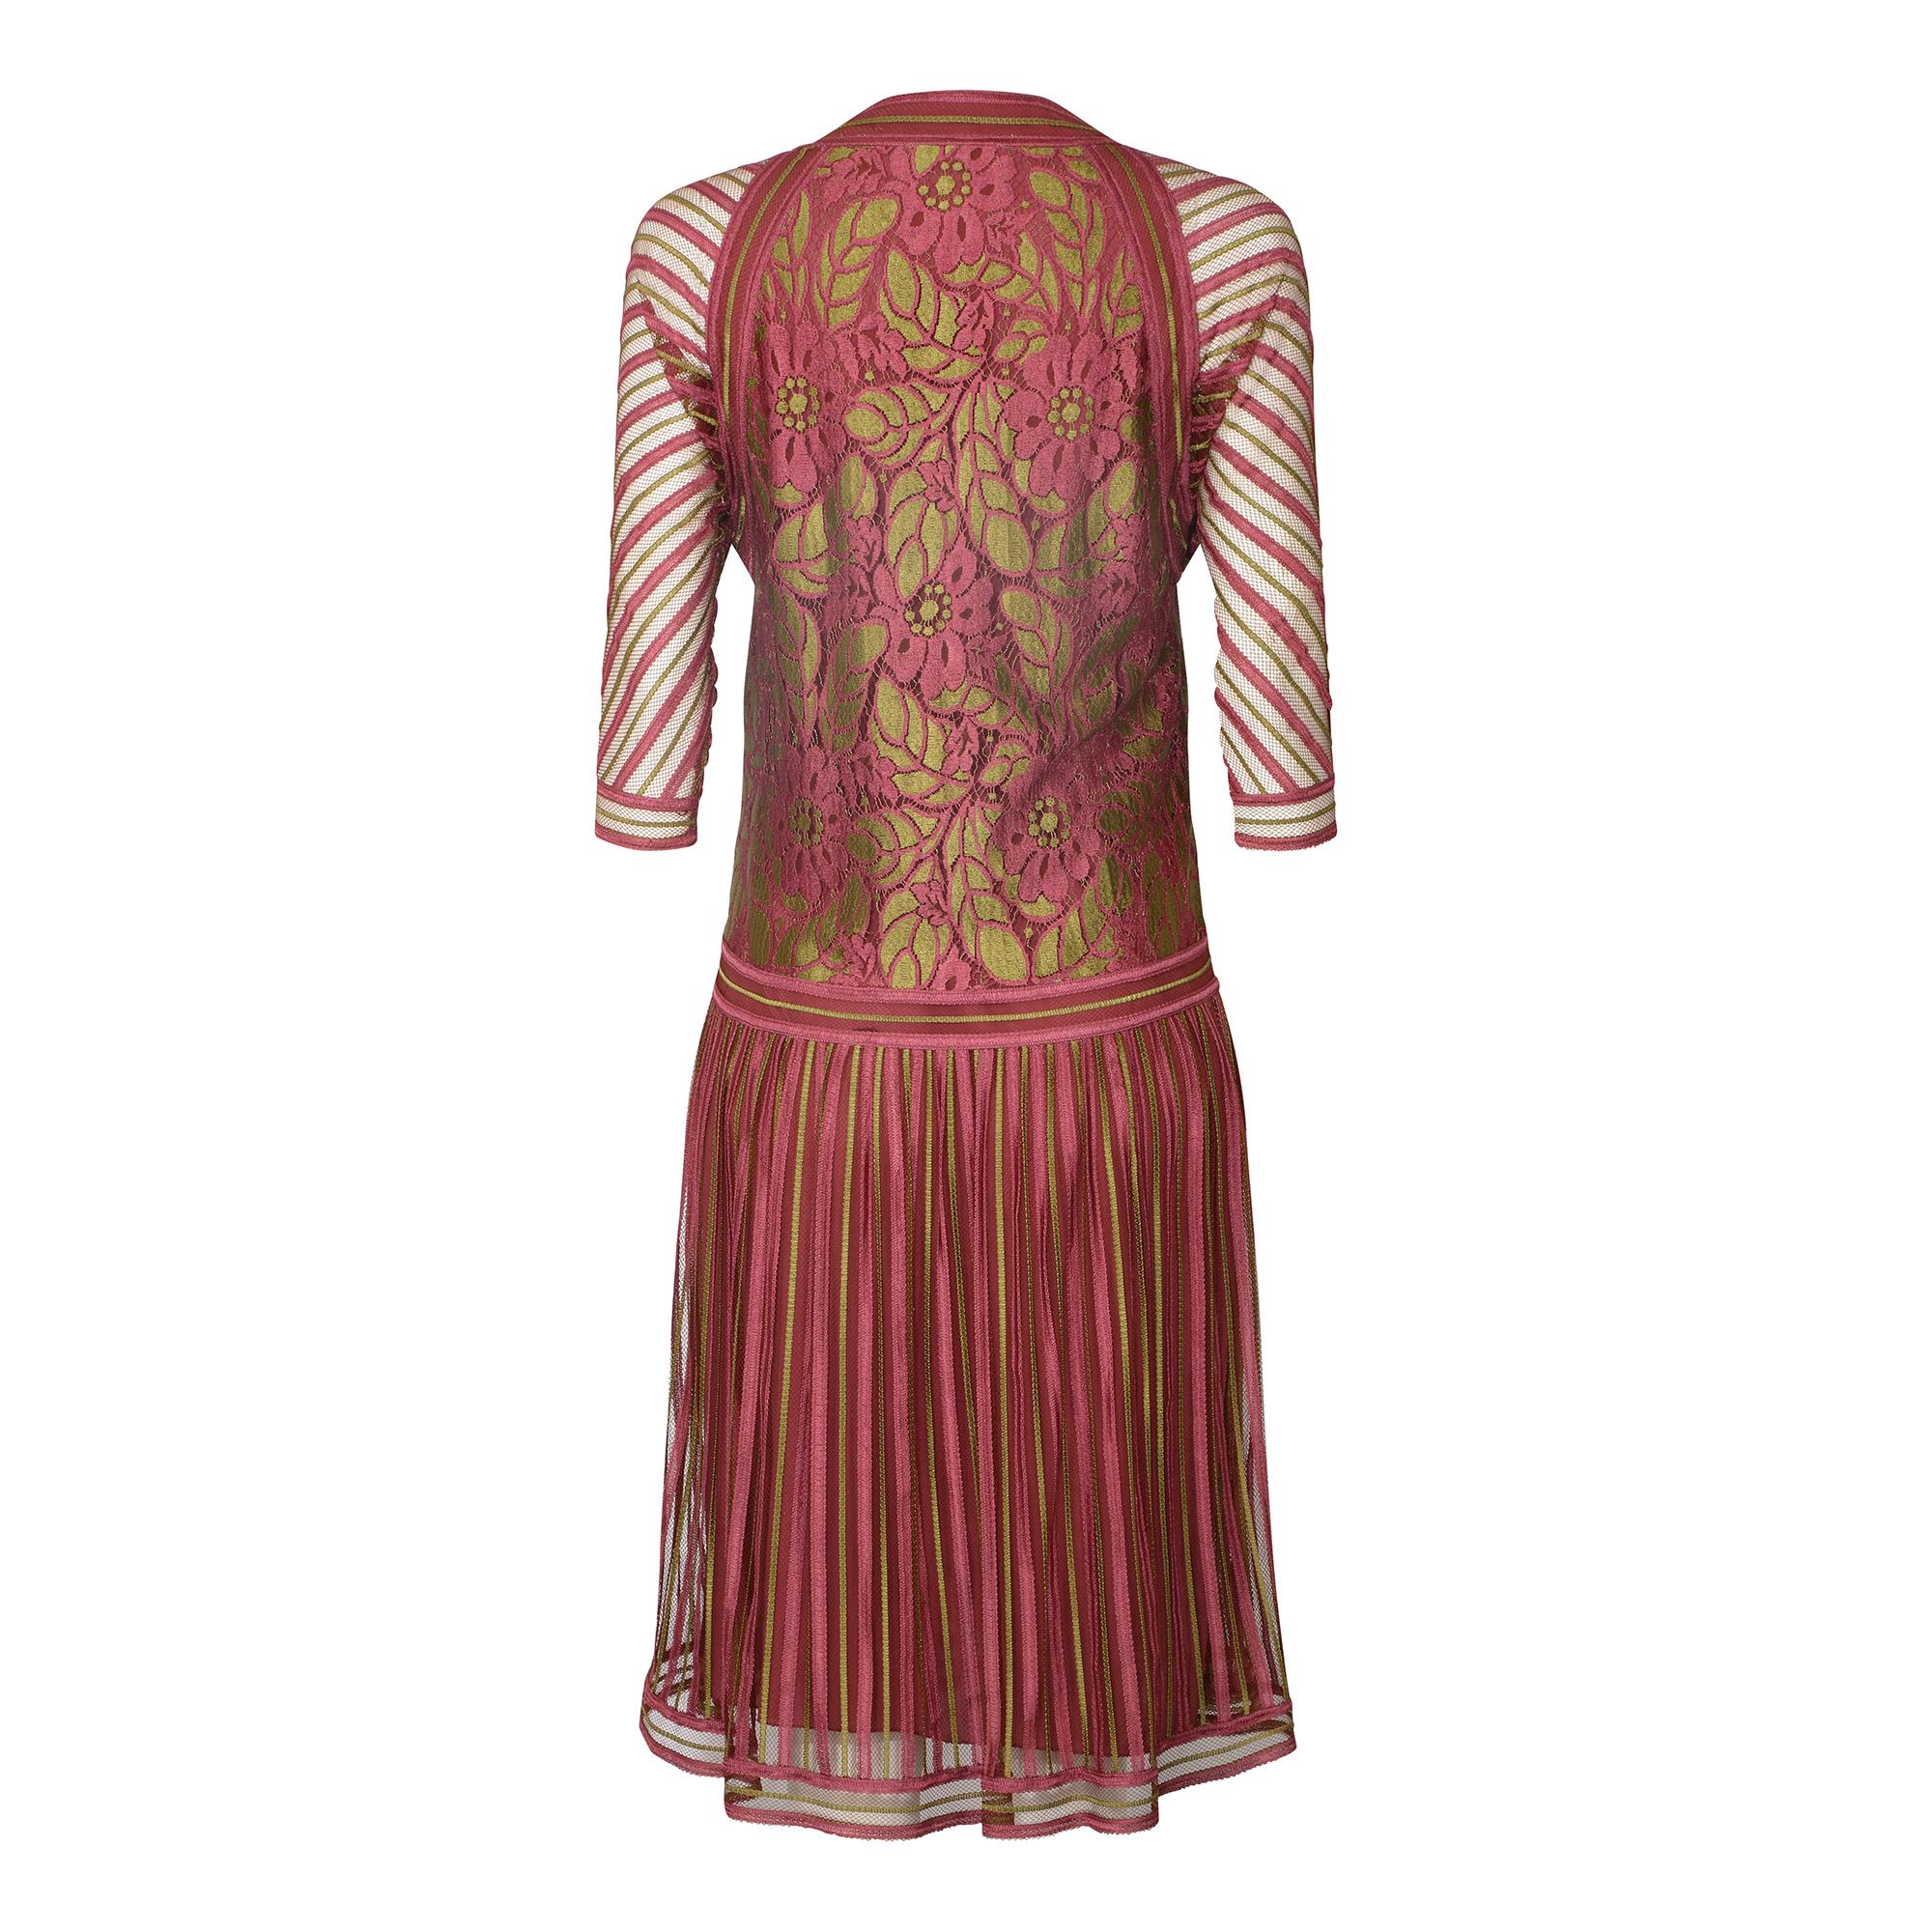 1970 Janice Wainwright Pink and Gold 1920s Style Flapper Dress.  Il s'agit d'un magnifique exemple des premières œuvres de Janice Wainwright, très recherchées par les collectionneurs et les musées.  Elle a fondé sa propre entreprise en 1970 après